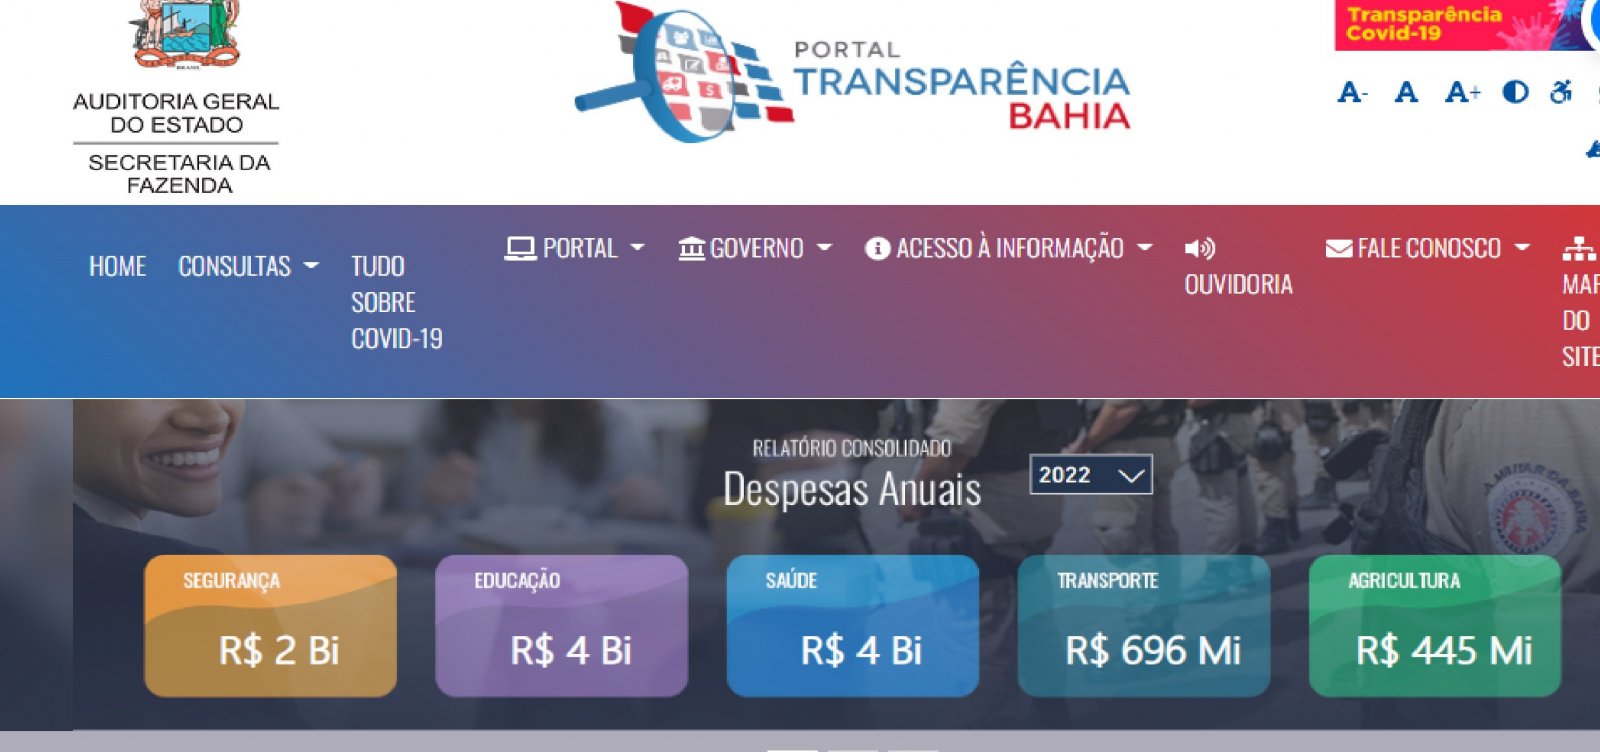 Bahia tem desempenho bom em índice que mede transparência e governança pública